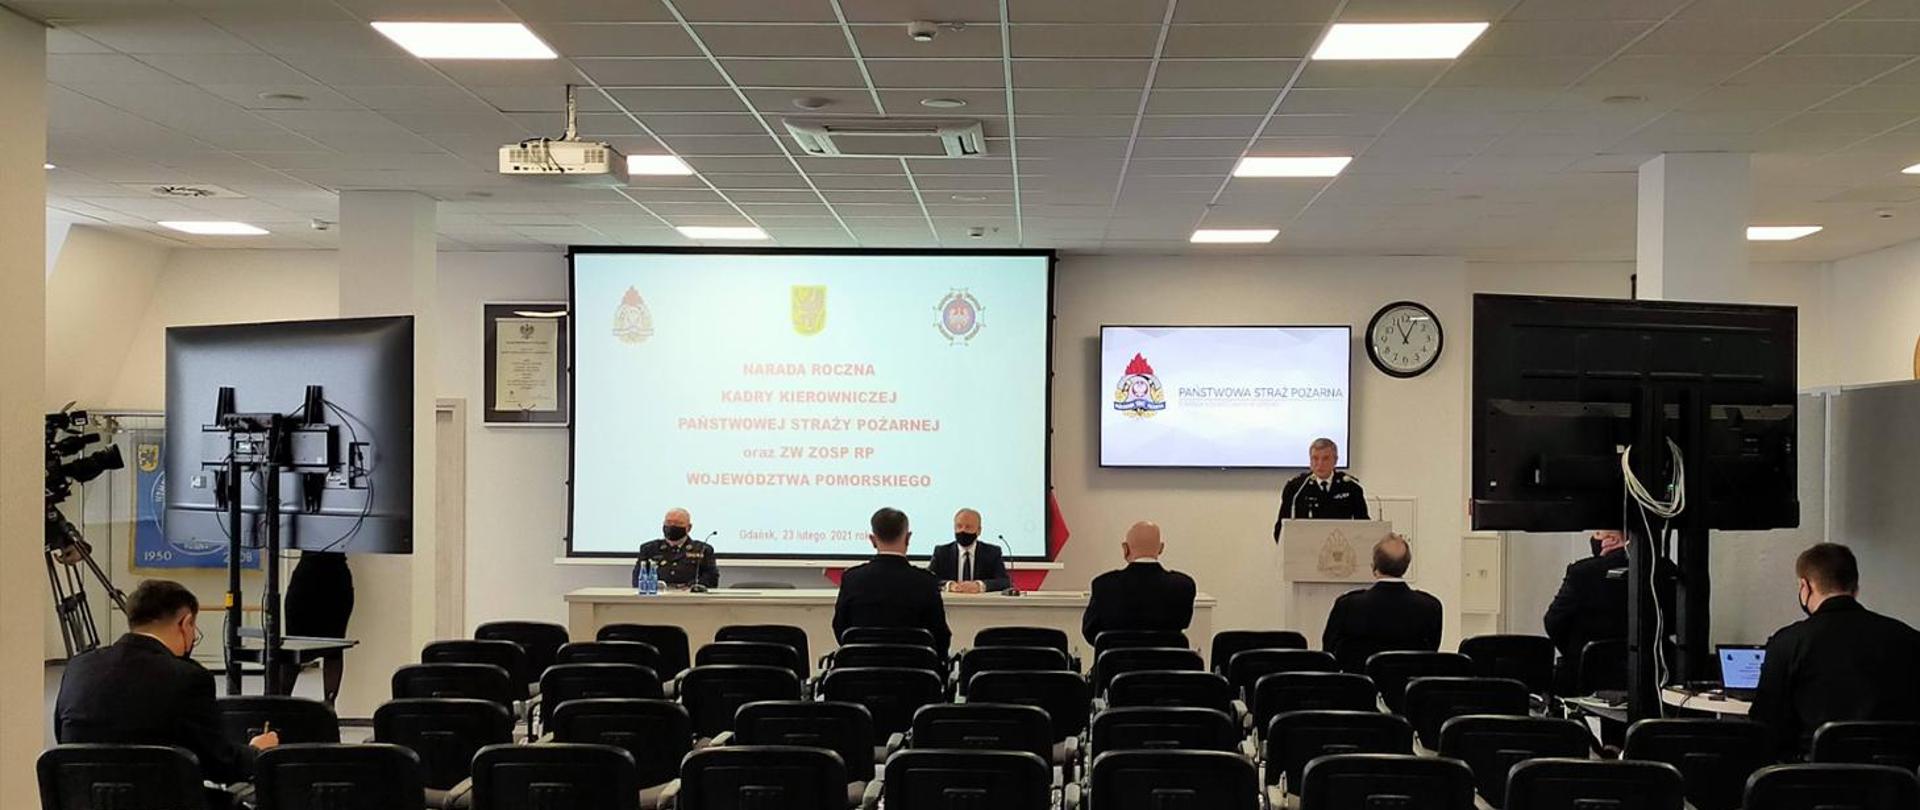 Sala konferencyjna KW PSP Gdańsk. Tyłem na krzesłach siedżą strażacy PSP oraz OSP. Przy mównicy stoi Pomorski Komendant Wojewodzki, Za stołem siedzi Wojewoda Pomorski oraz Prezes Zarządu Wojewódzkiego OSP